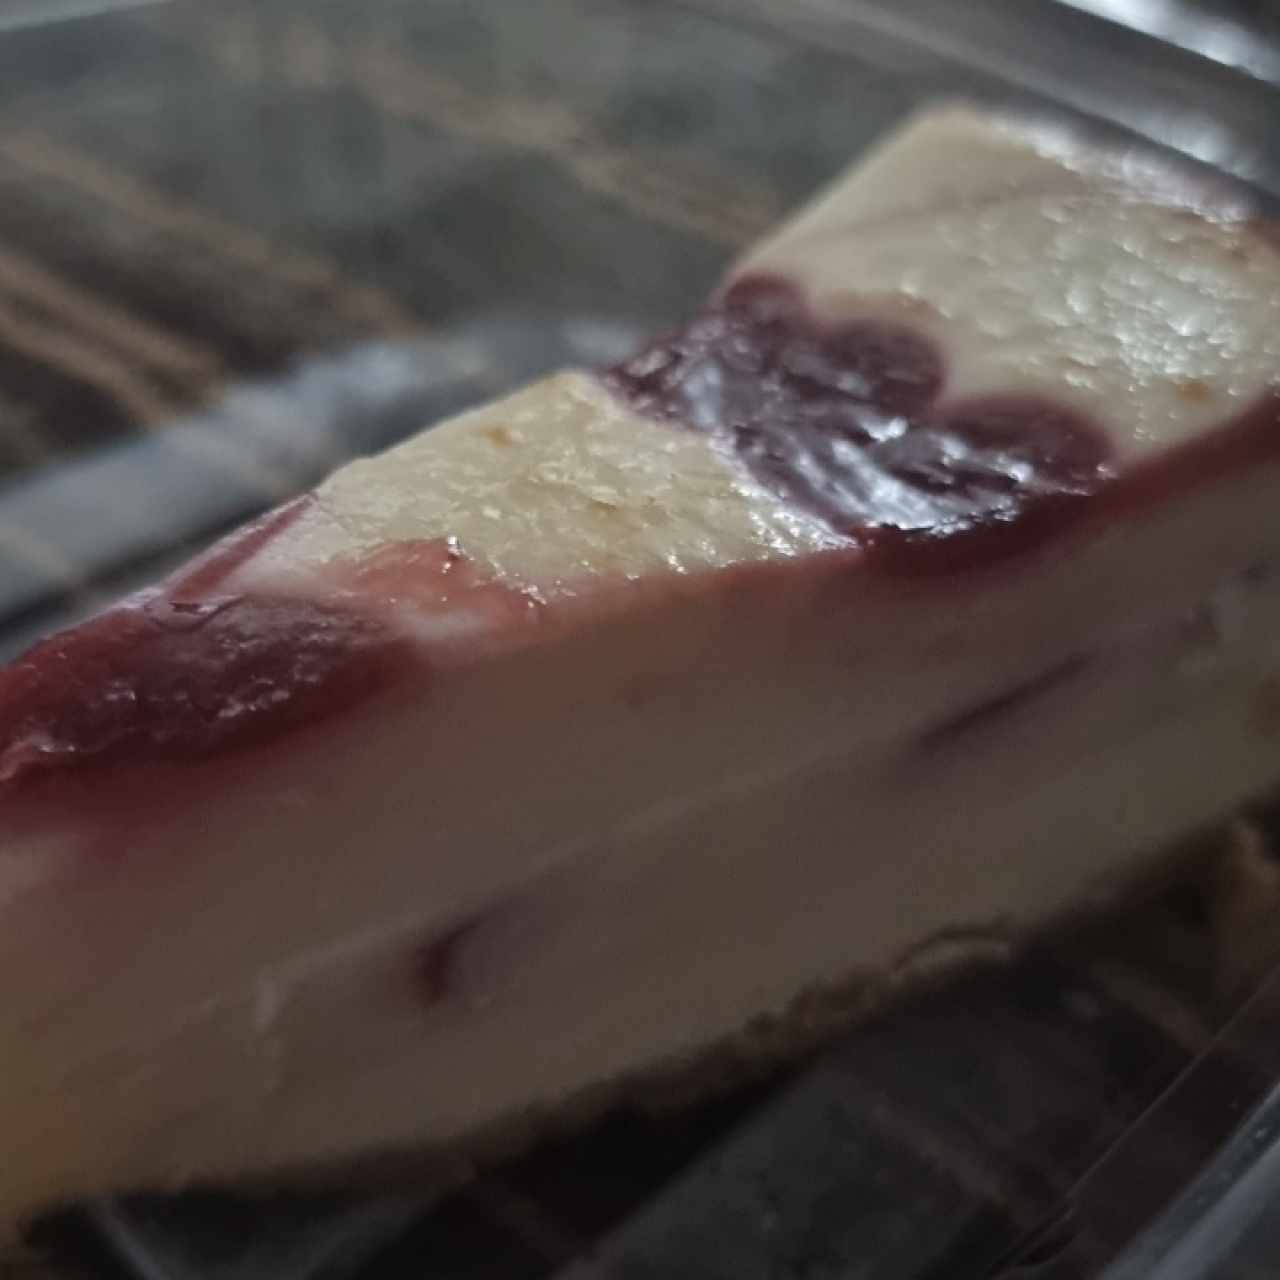 Raspberry White Chocolate Cheesecake